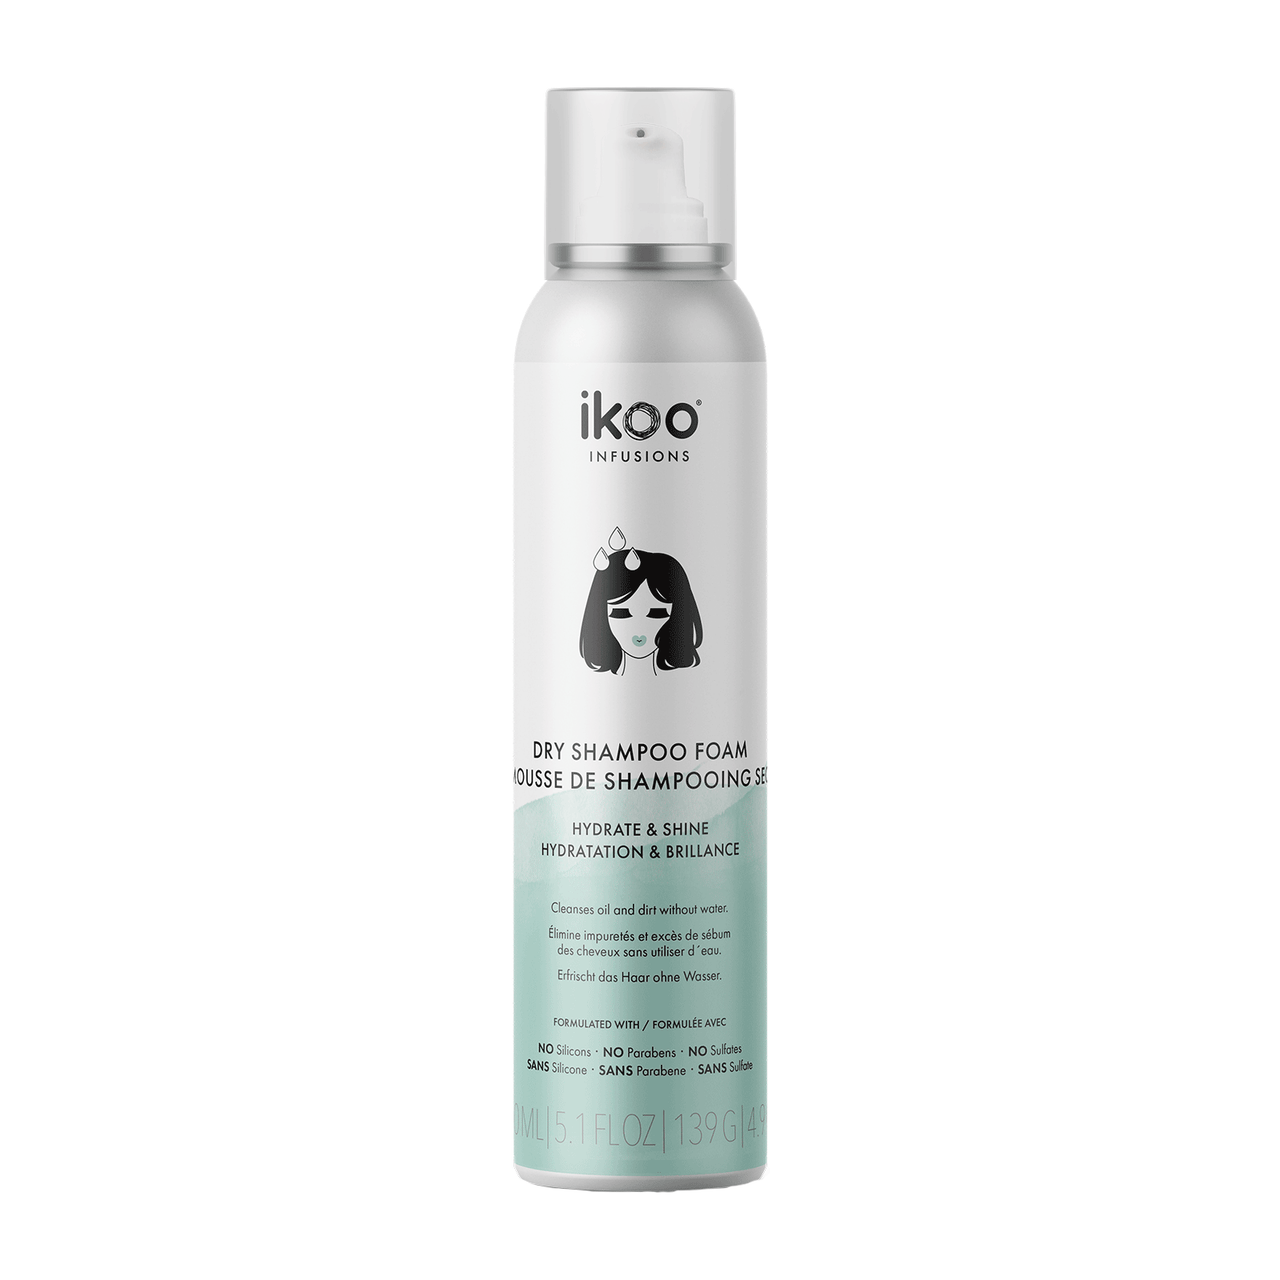 ikoo Dry Shampoo Foam Hydrate & Shine 5.1 fl. oz.